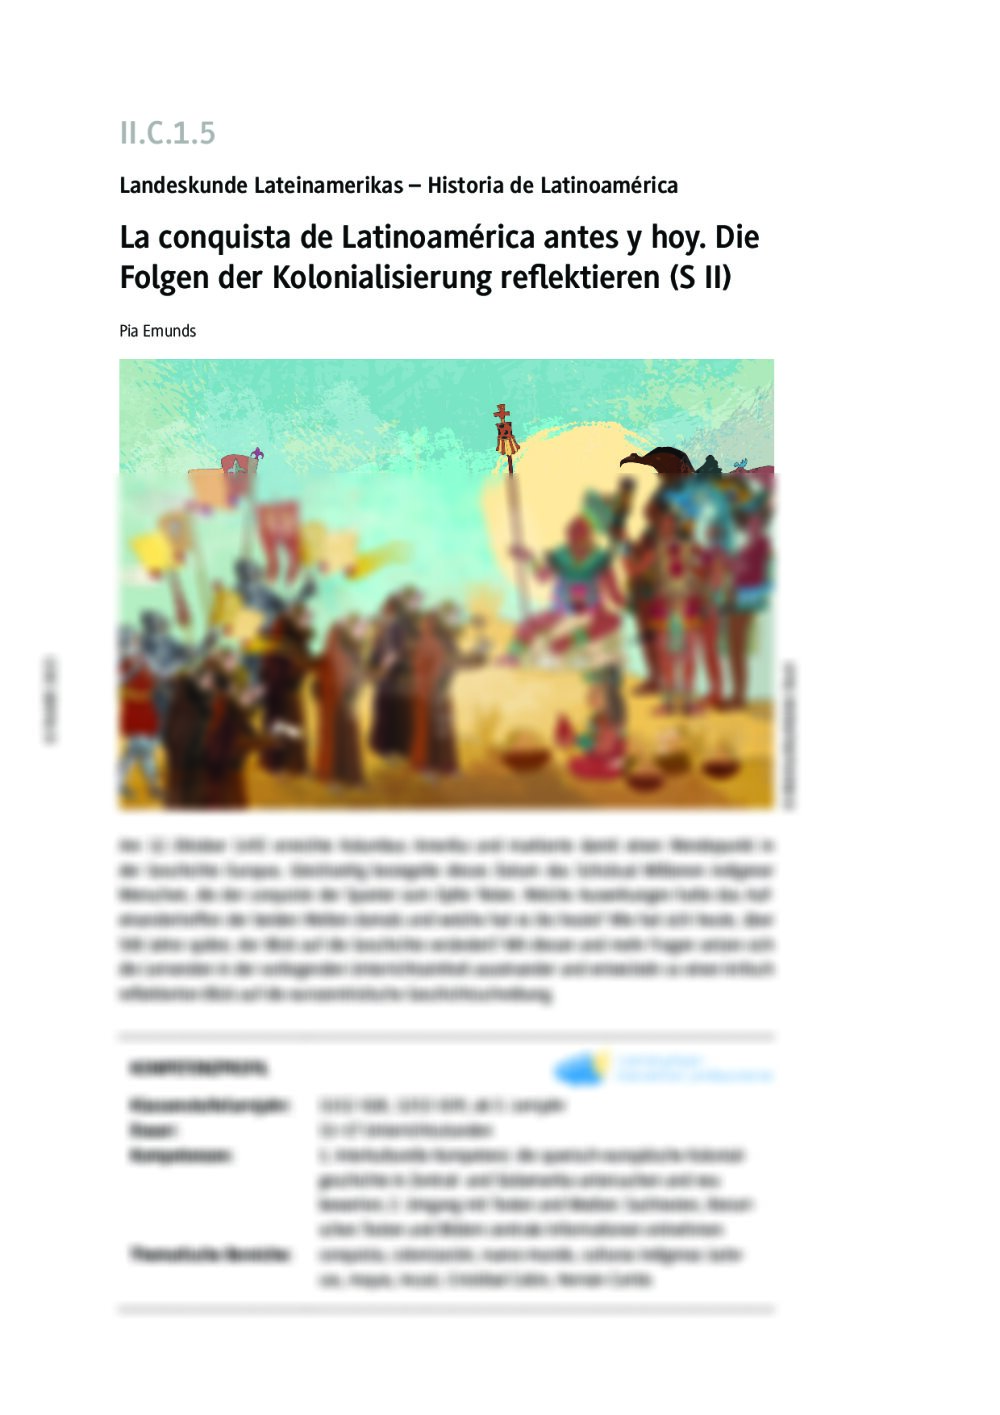 La conquista de Latinoamérica antes y hoy - Seite 1